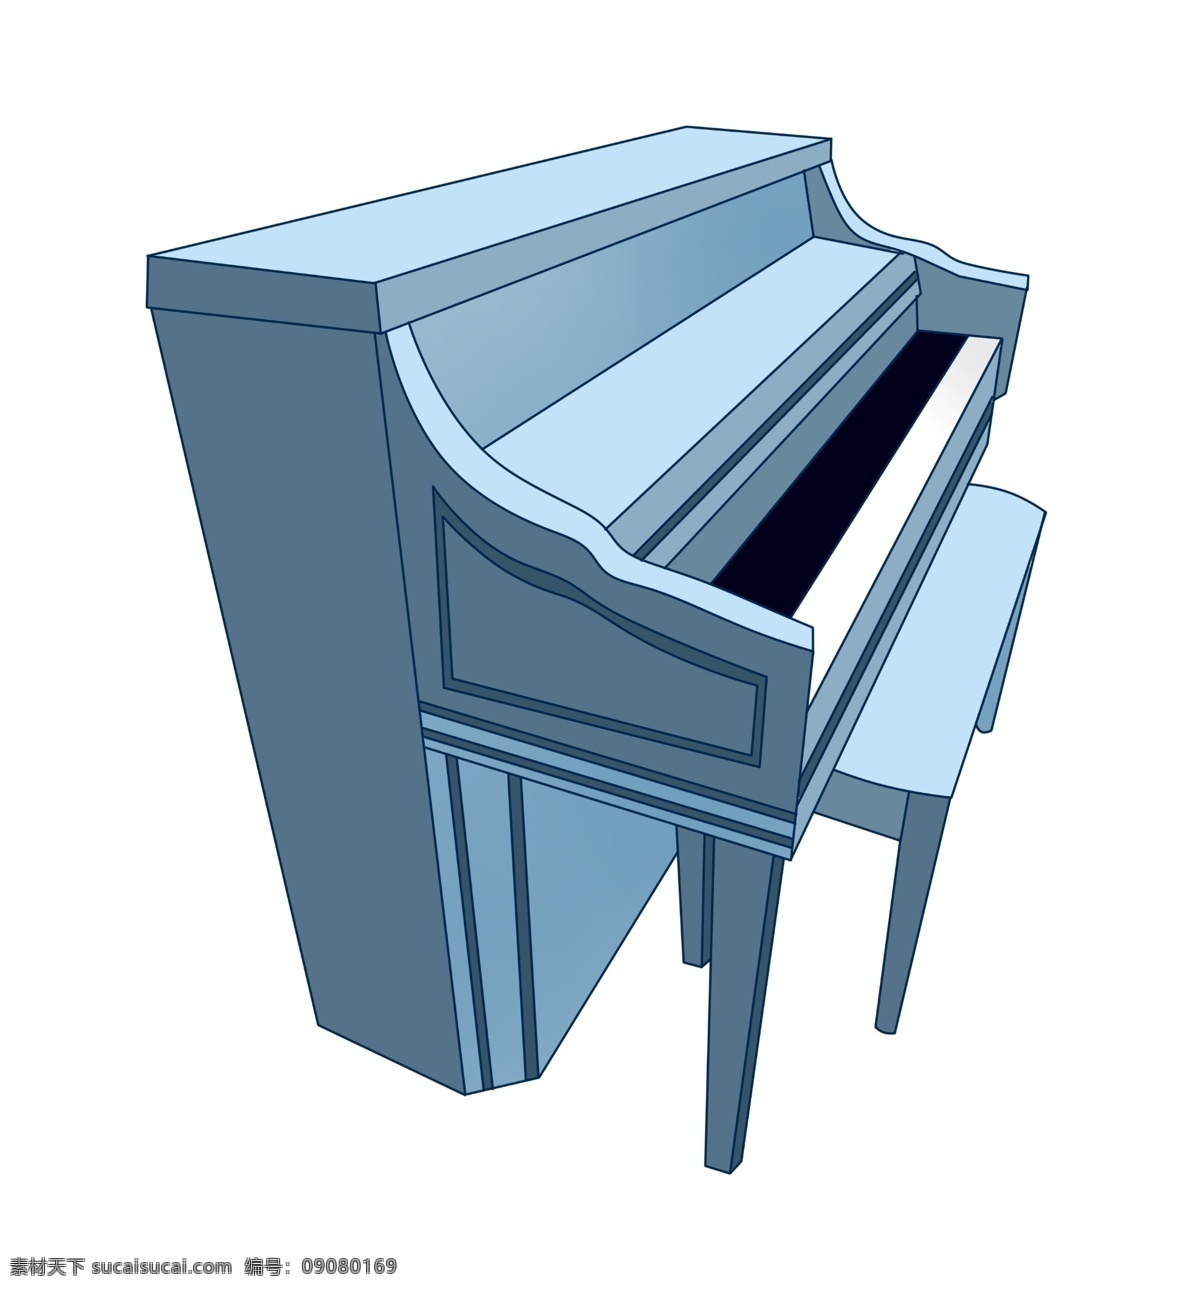 蓝色 钢琴 装饰 插画 蓝色的钢琴 漂亮的钢琴 乐器钢琴 钢琴装饰 钢琴插画 立体钢琴 精美钢琴